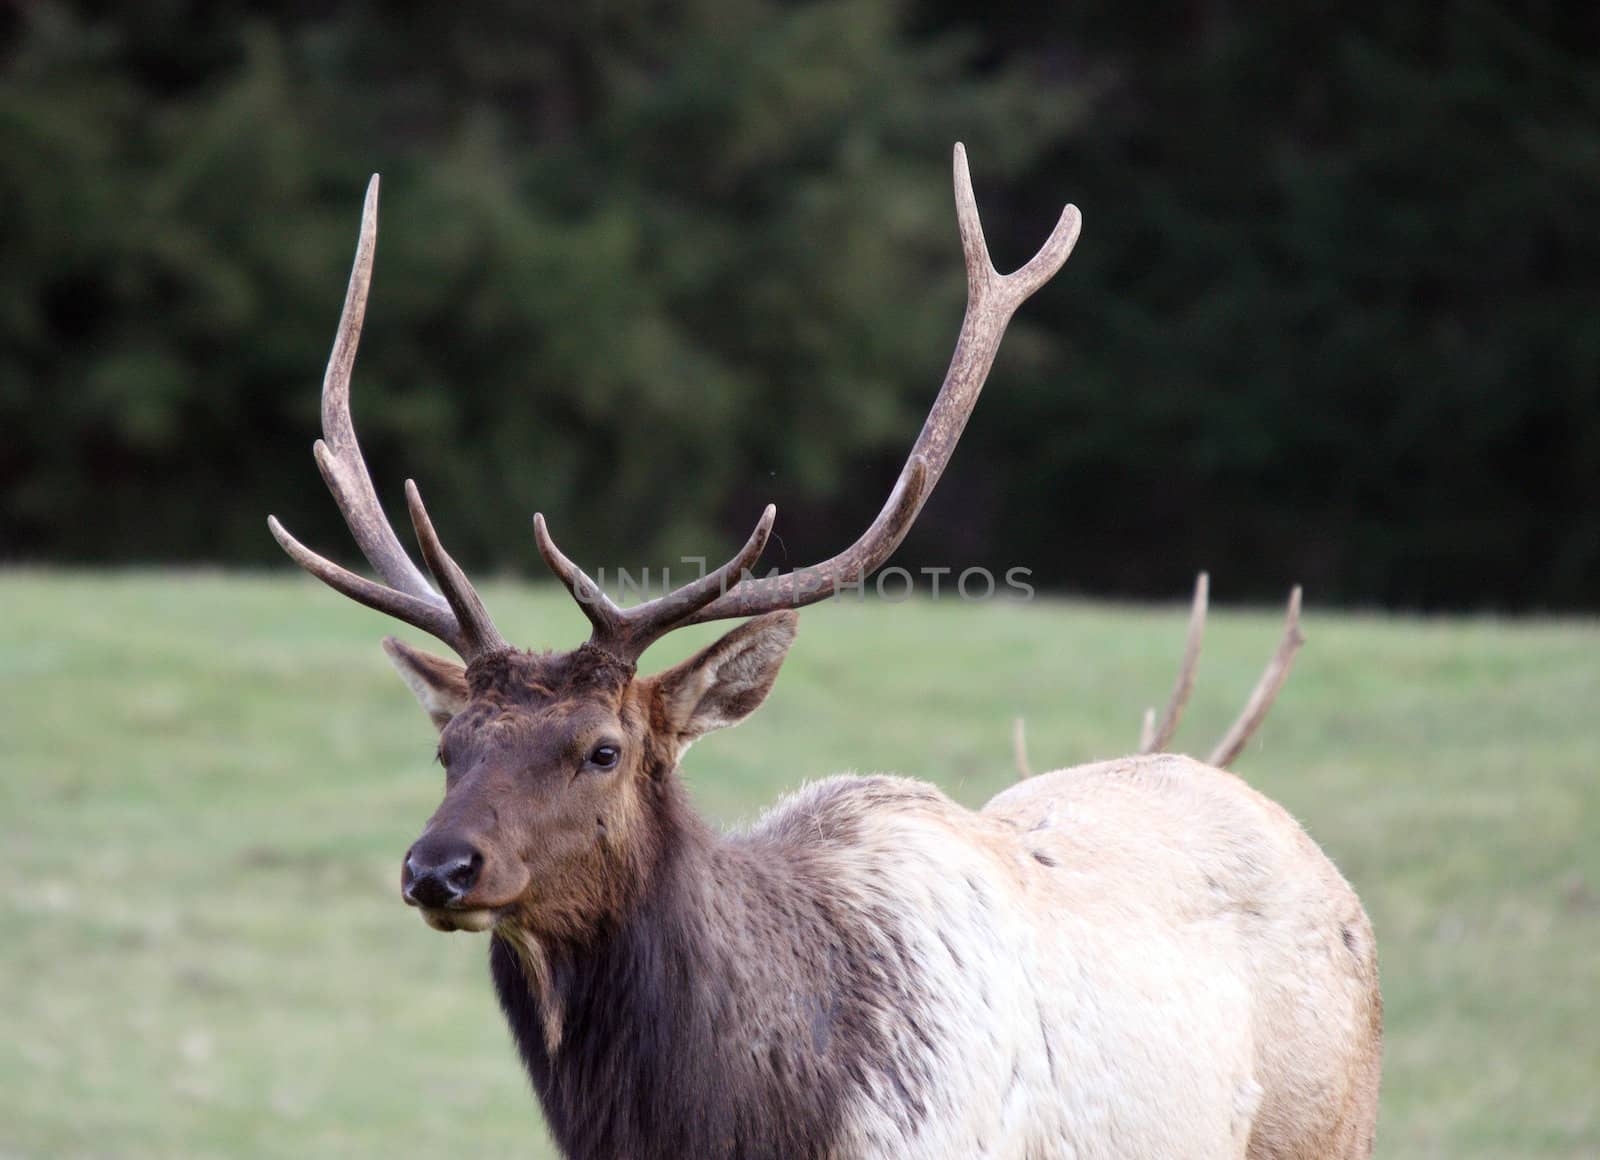 Elk.  Photo taken at Northwest Trek Wildlife Park, WA. by sandsphoto